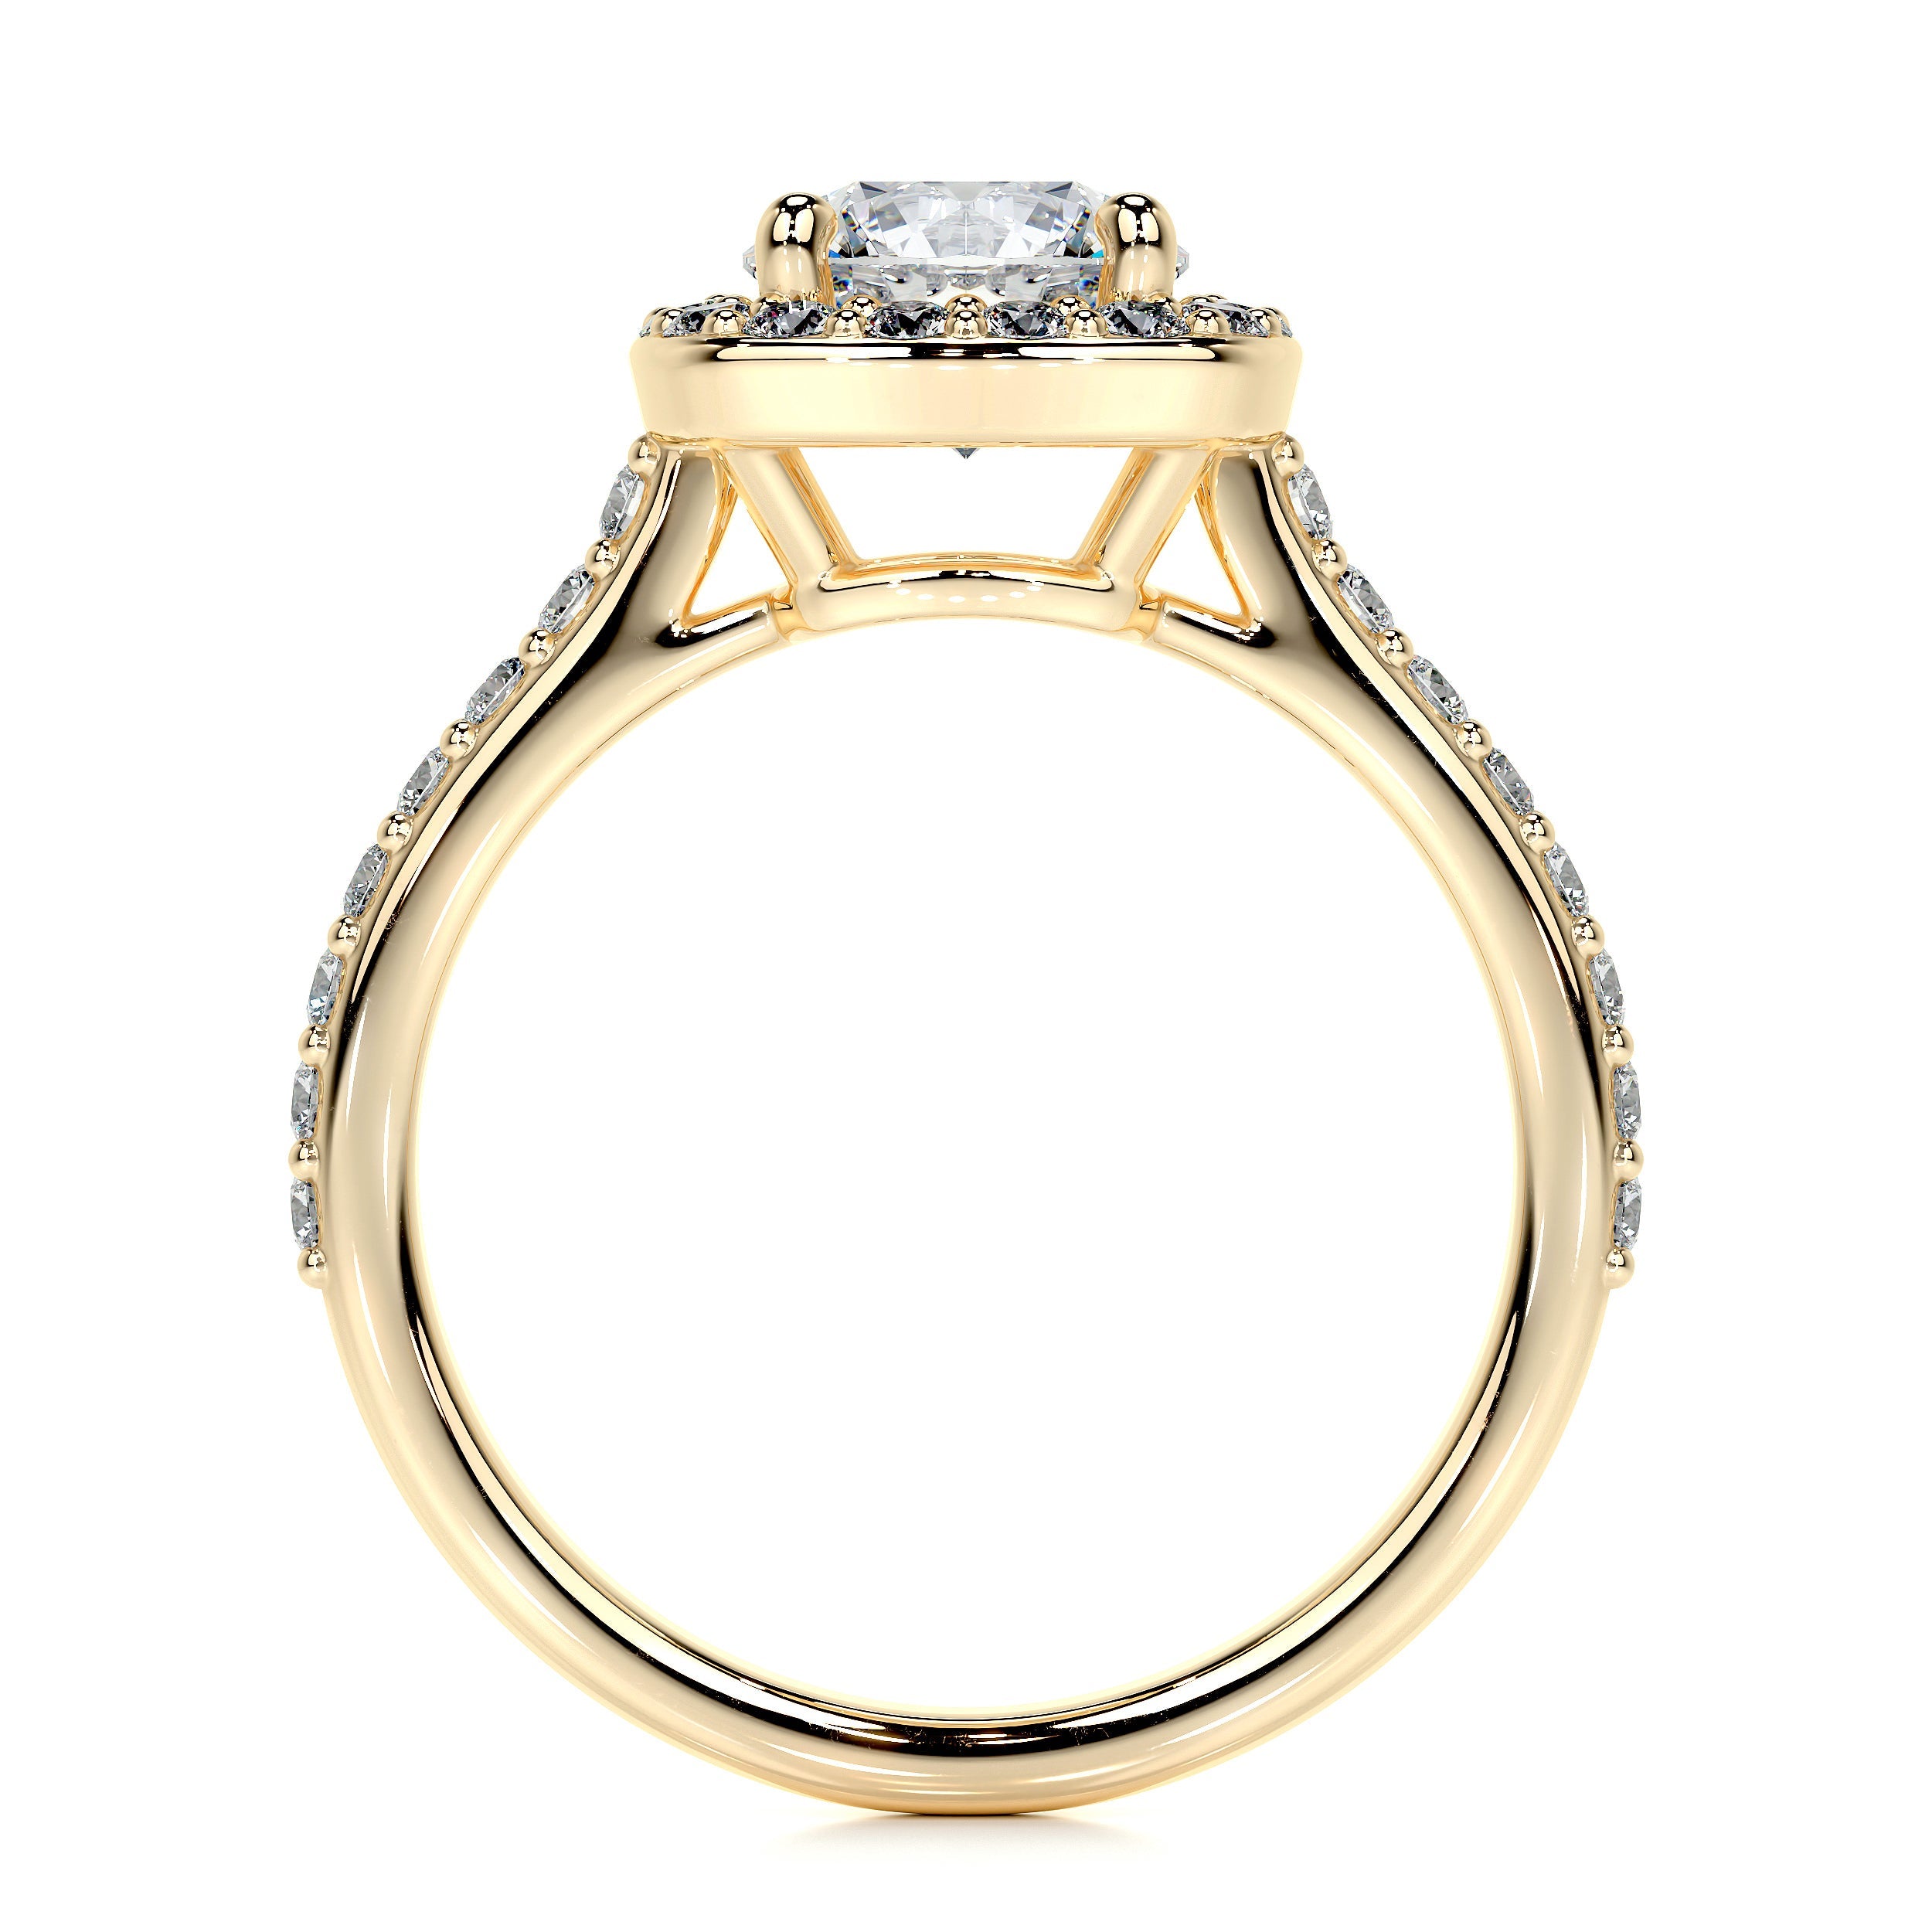 Paisley Lab Grown Diamond Ring   (2 Carat) -18K Yellow Gold